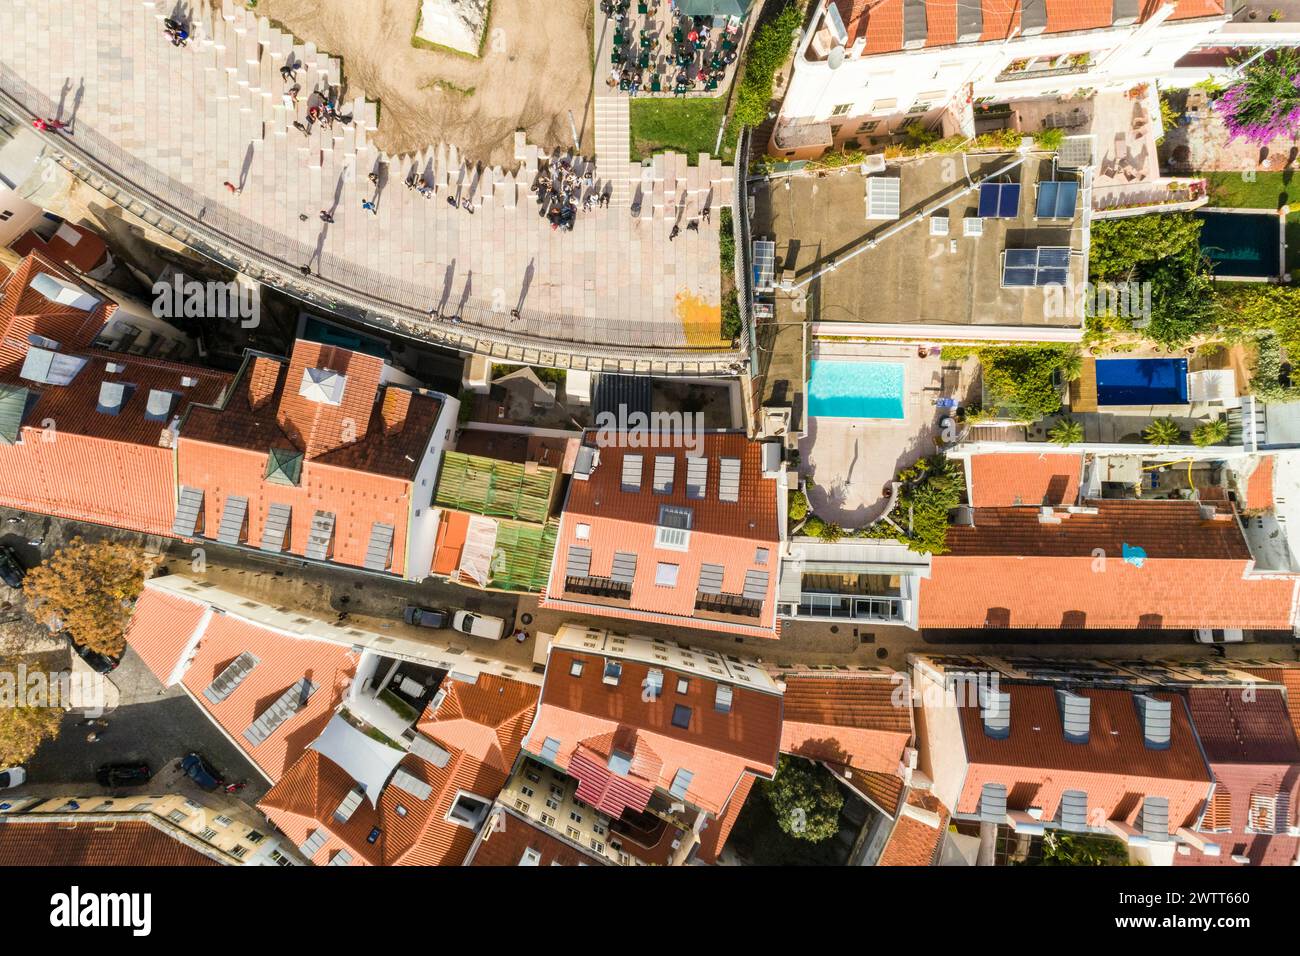 Vista dall'alto dei tetti e delle vecchie case della città vecchia nel cuore di Lisbona con piscina, Portogallo Foto Stock